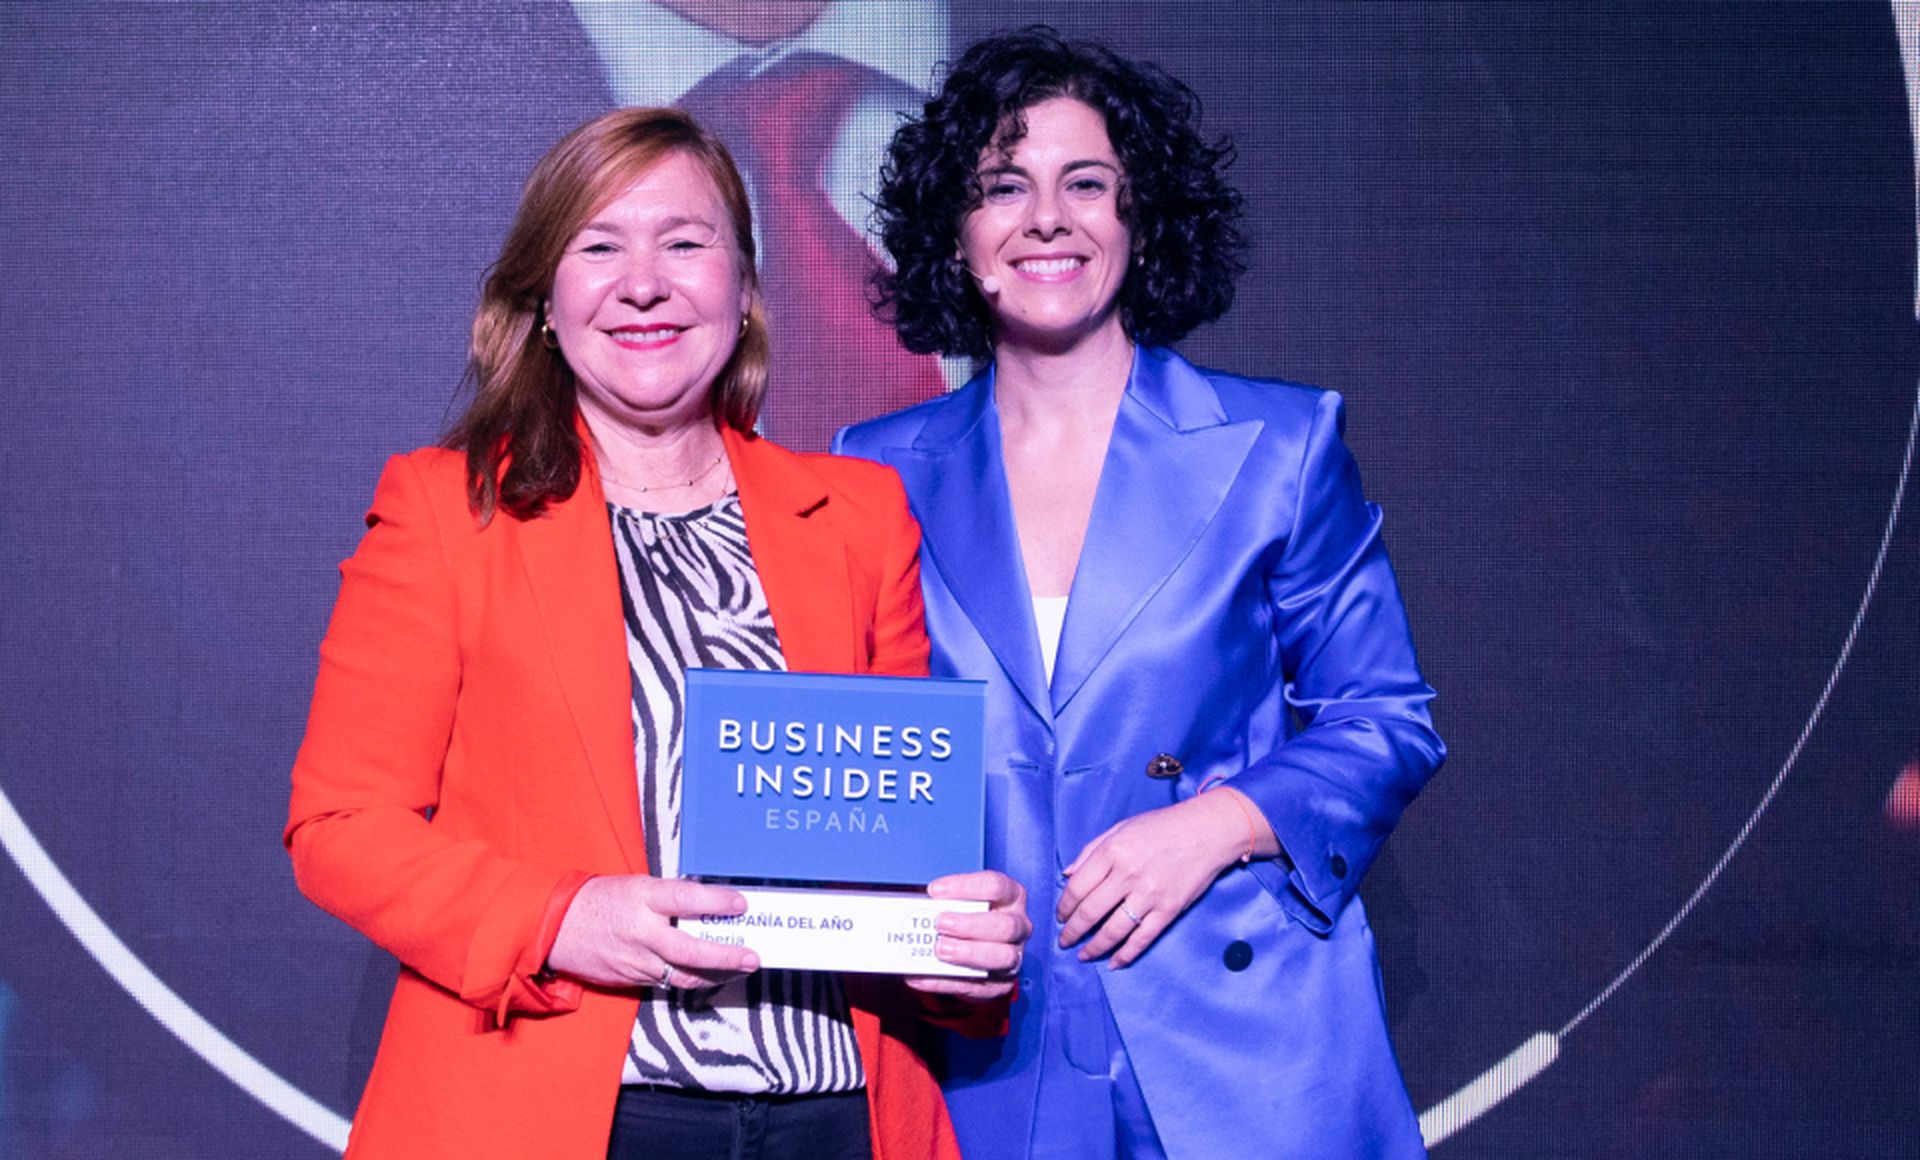 De izquierda a derecha, Elena Baillo, directora financiera de Iberia, recibe el premio Top Insider del Año en la categoría de Compañía de Yovanna Blanco, directora editorial de Business Insider España.